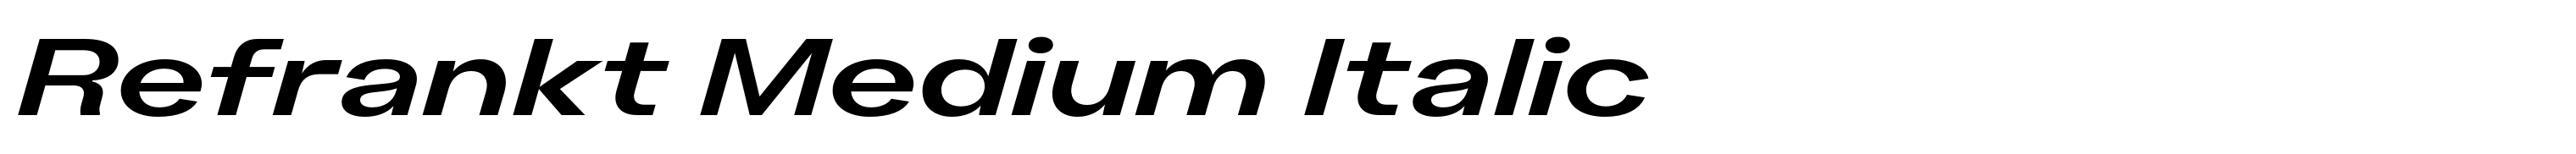 Refrankt Medium Italic